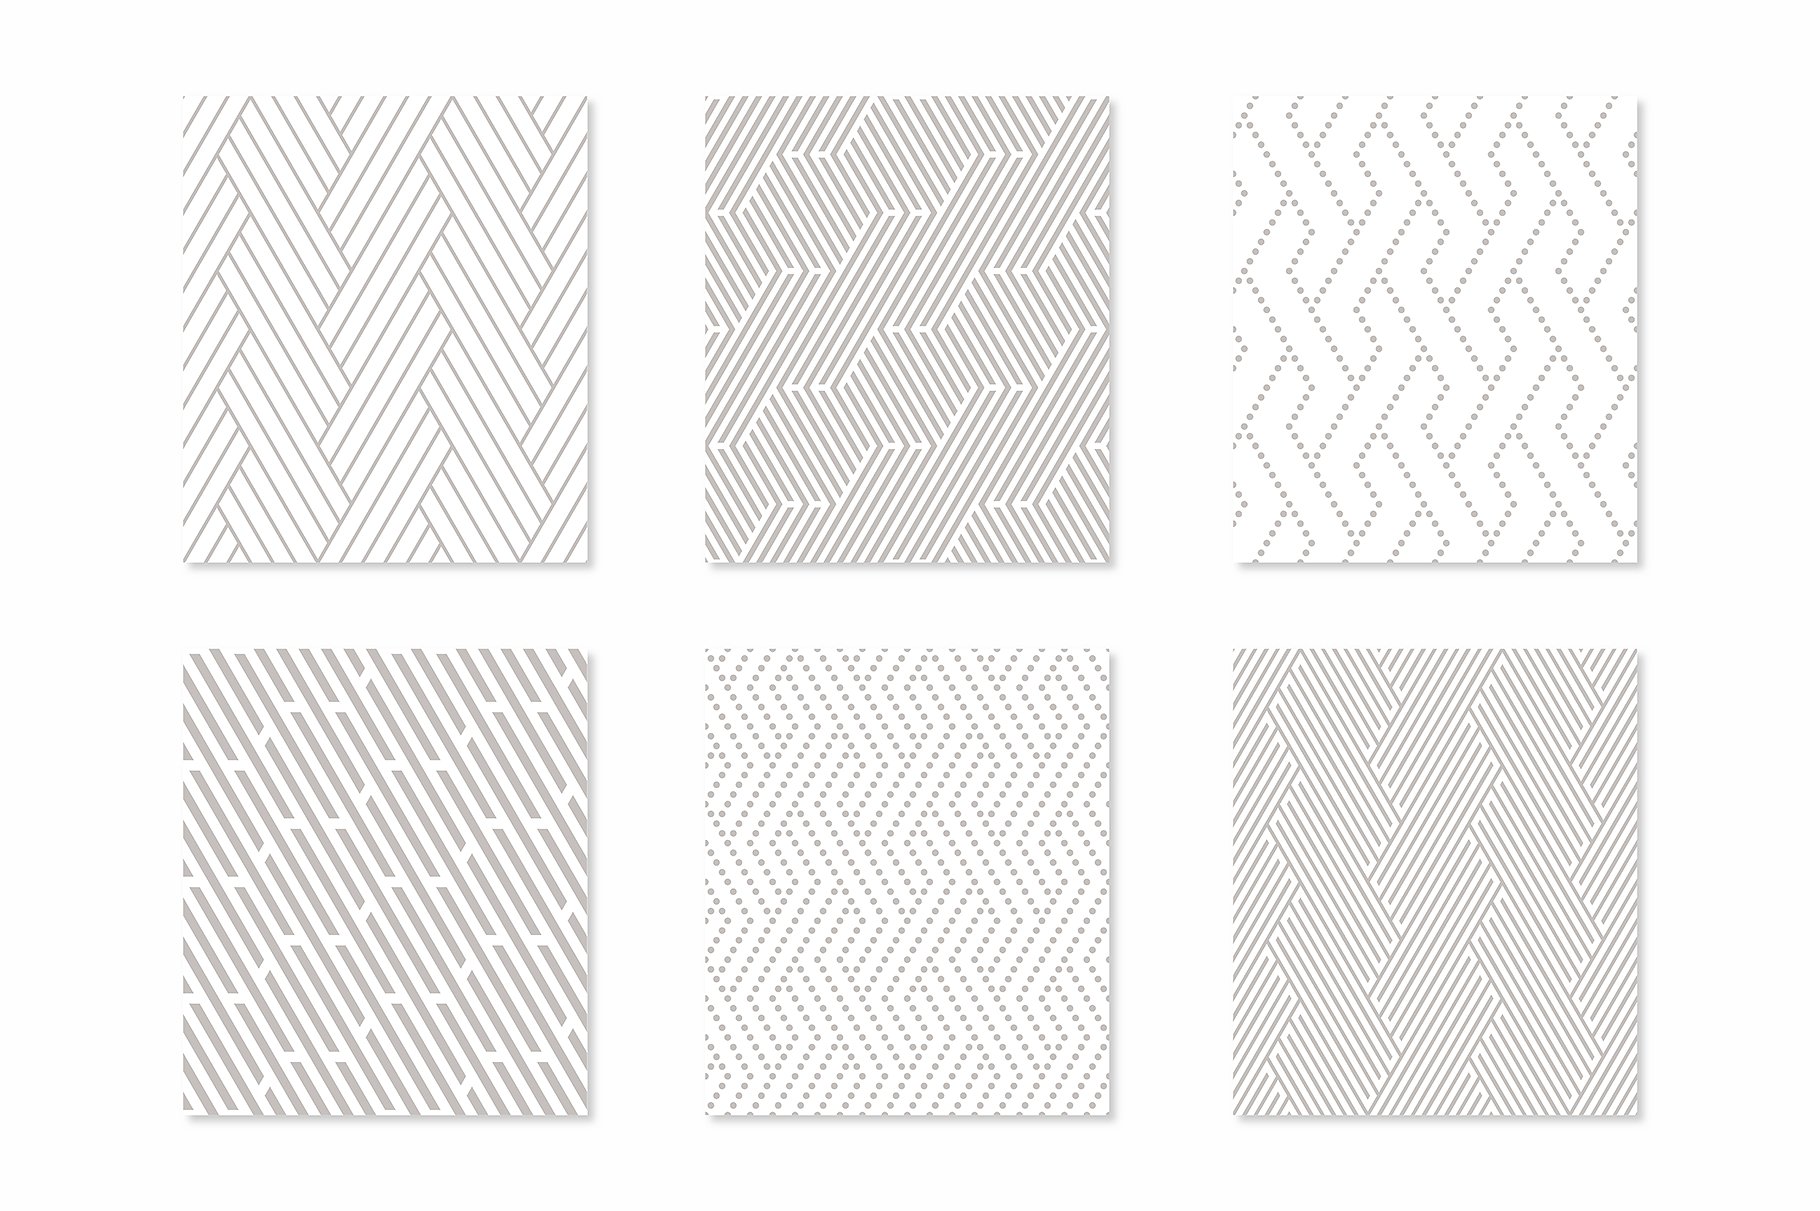 重叠直线几何图案合集 Straight Seamless Patterns Bundle插图(2)